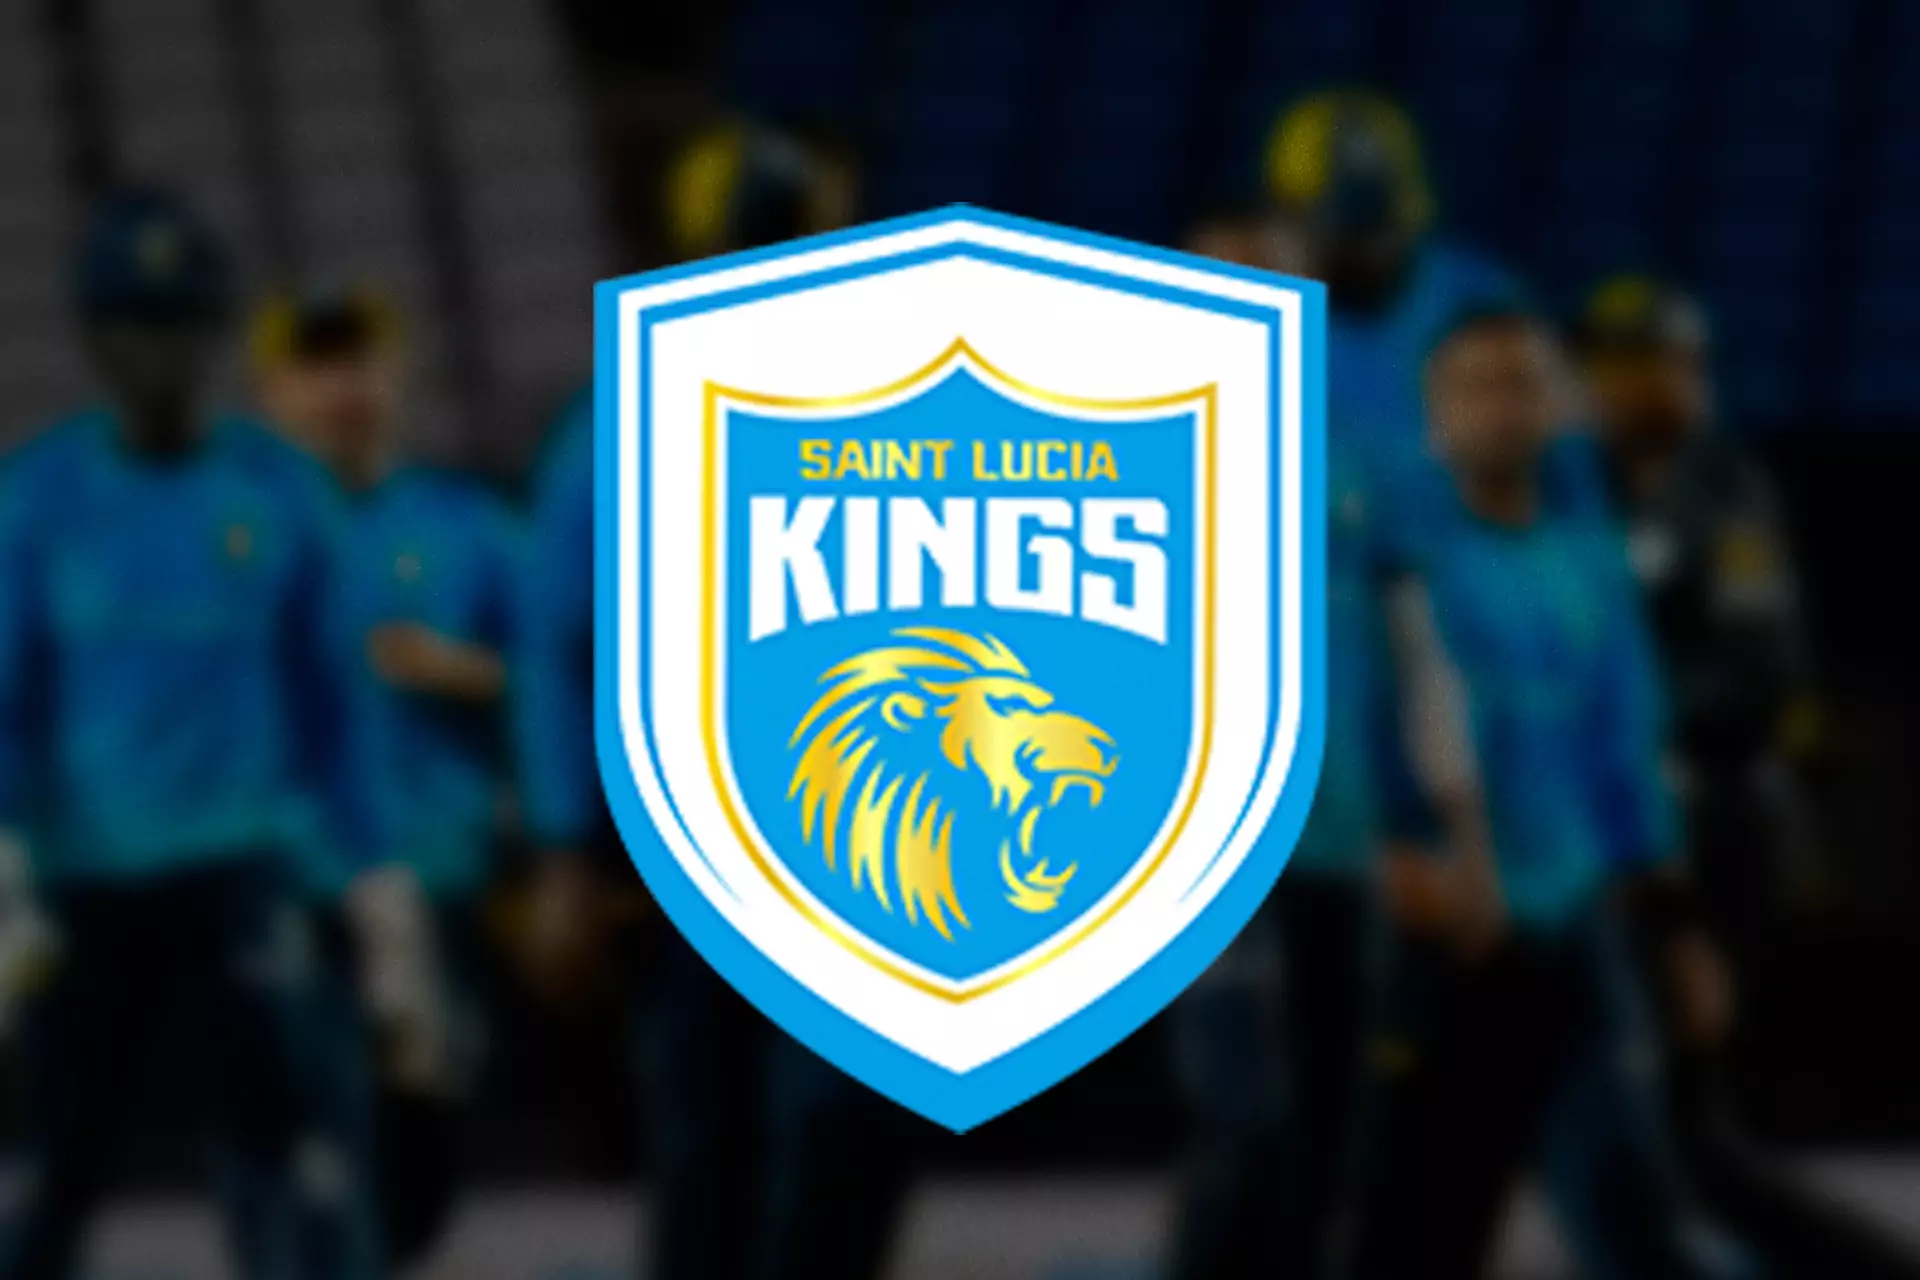 Saint Lucia Kings team represents Saint Lucia in the League.